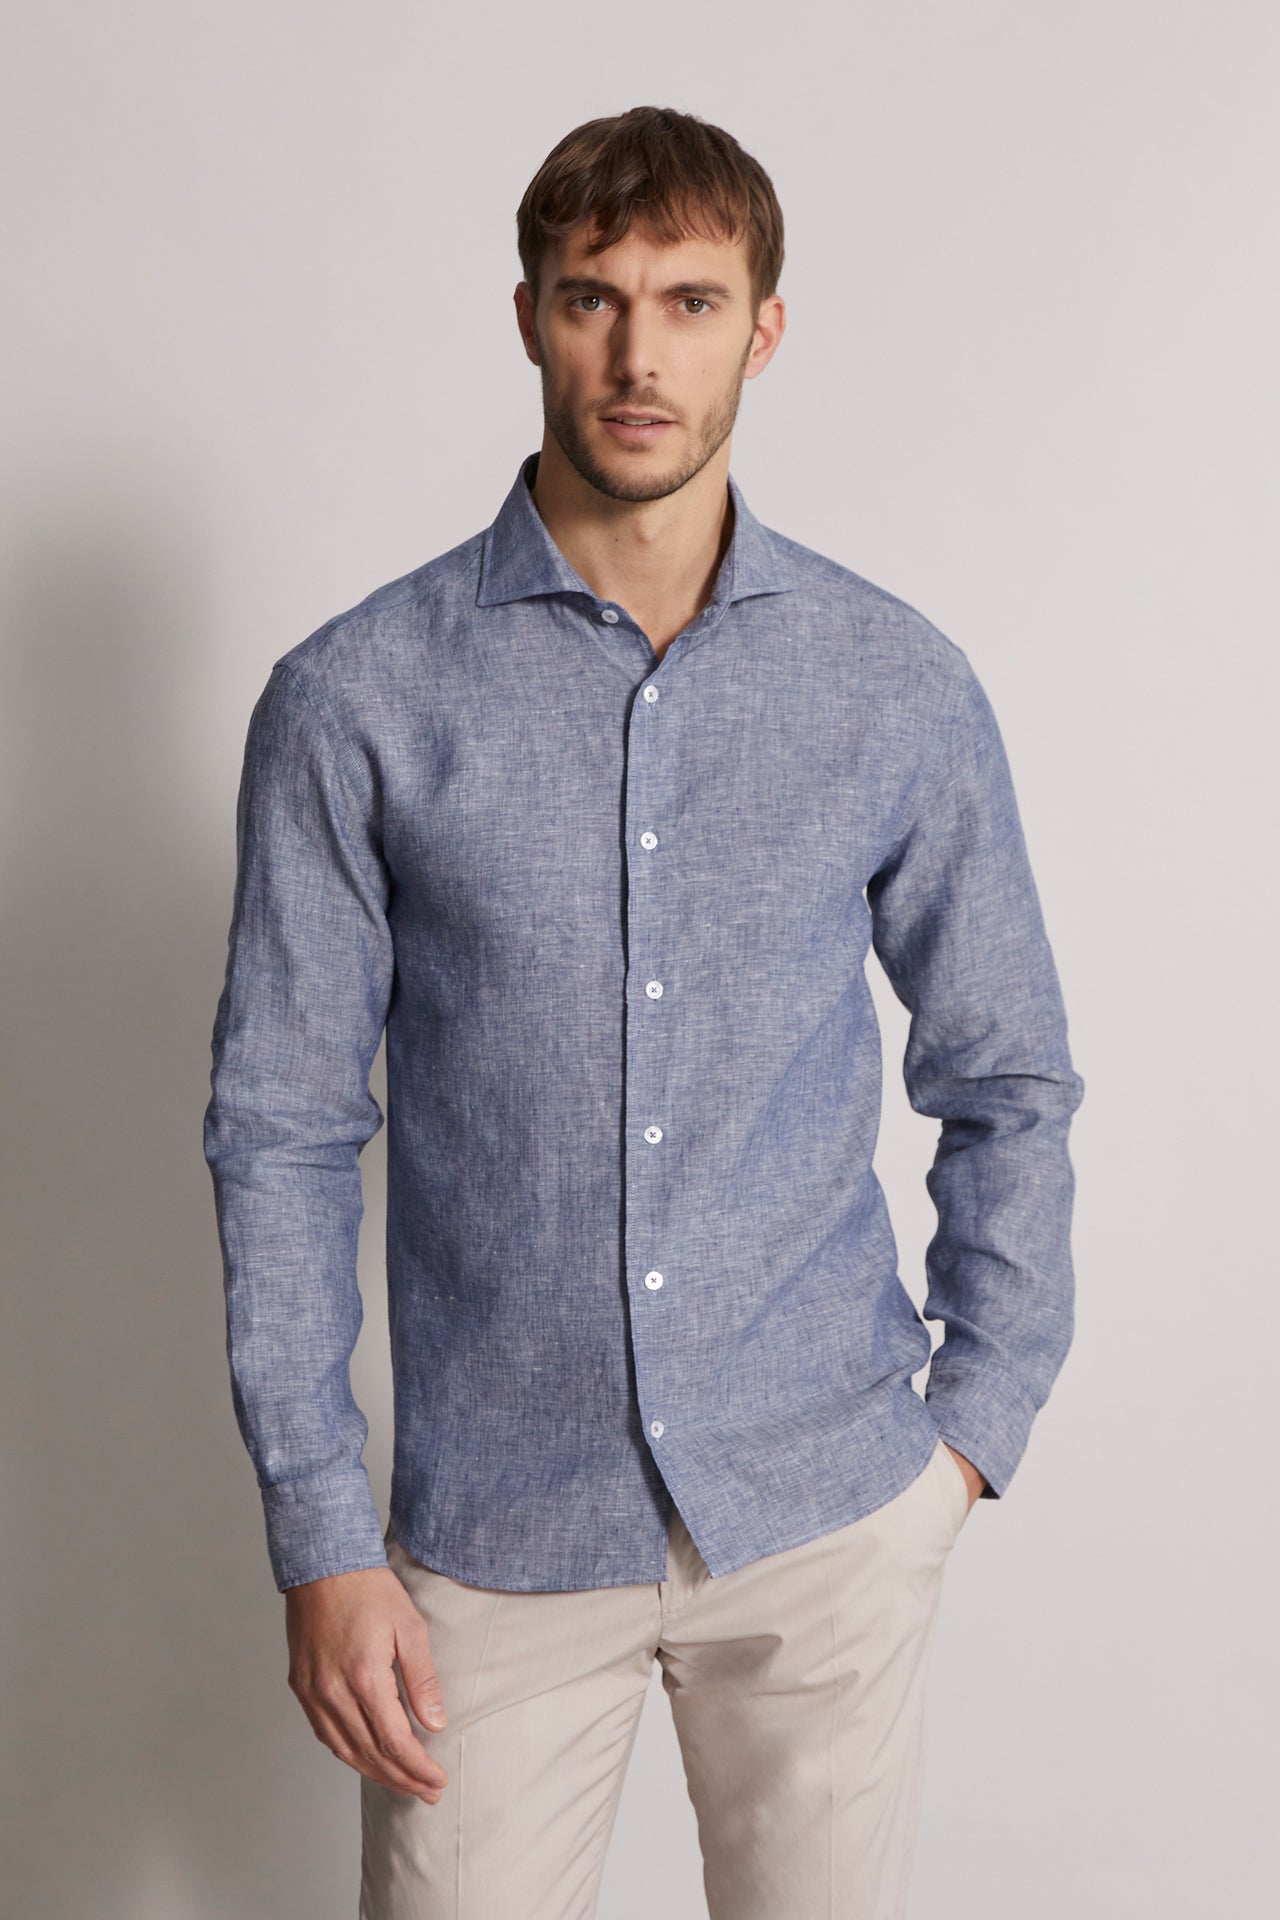 mens blue linen shirt in denim - front view 